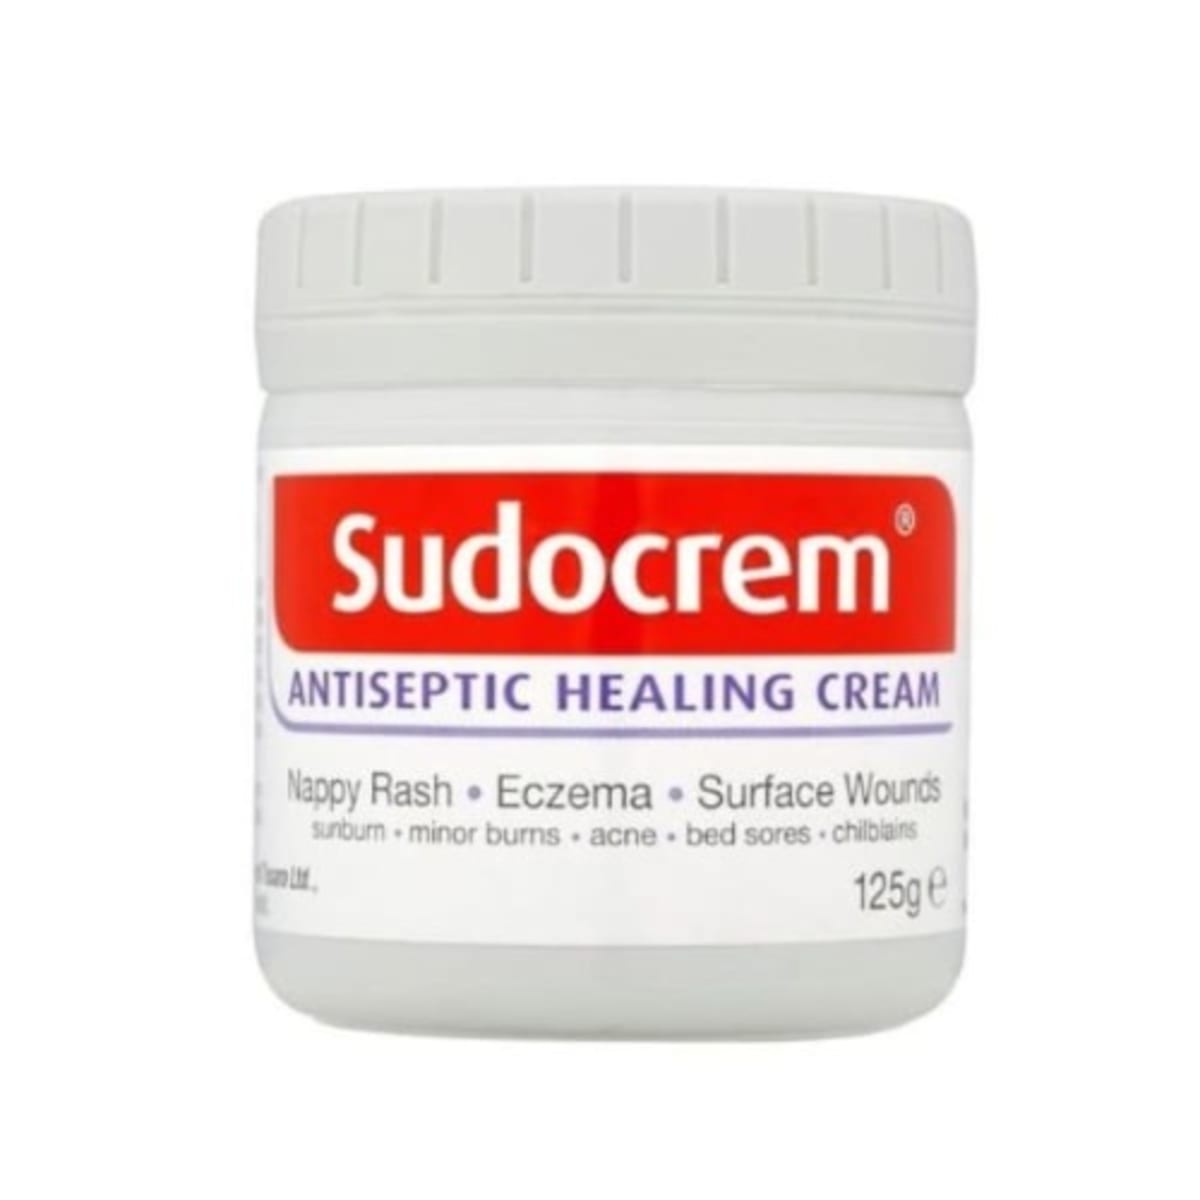 Sudocrem Nappy Rash Antiseptic Healing Cream